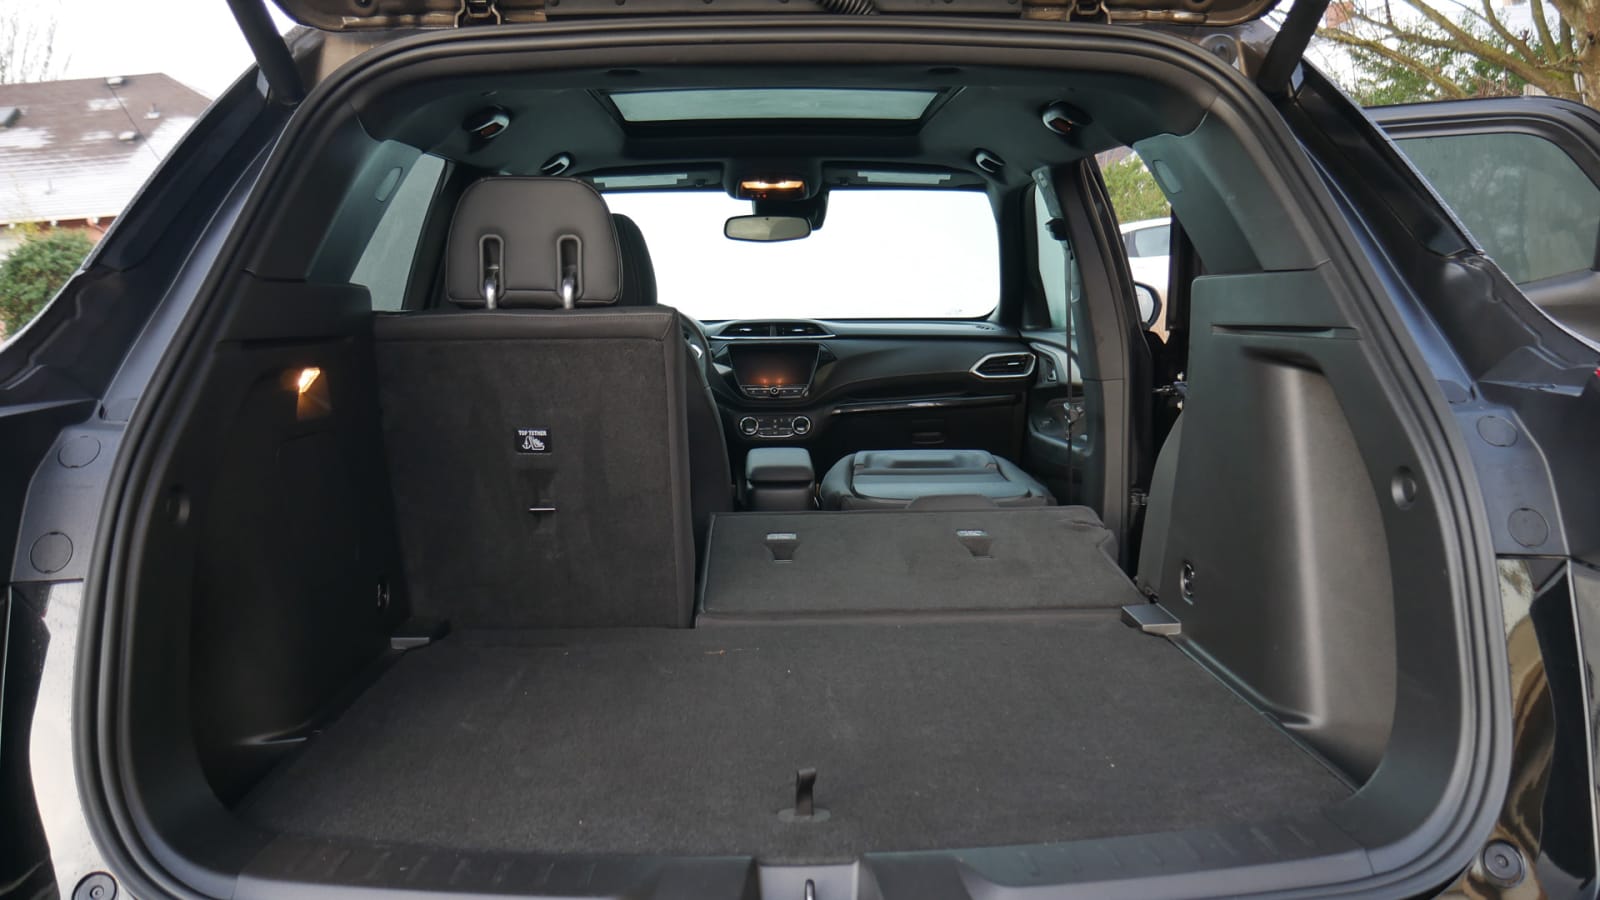 Chevrolet Trailblazer Luggage Test How much cargo space? Autoblog